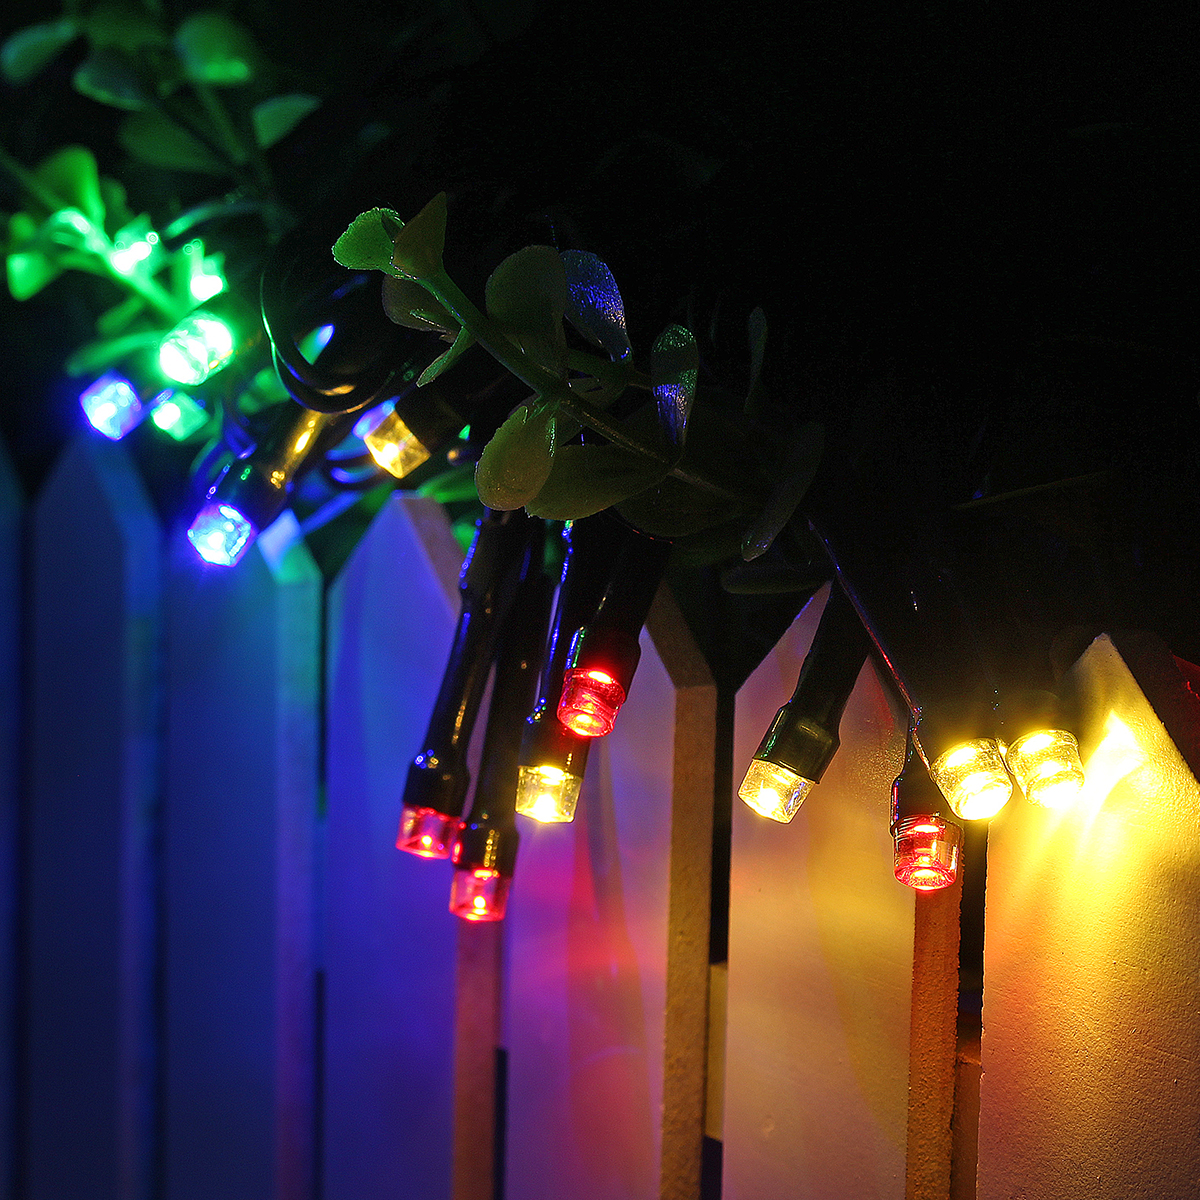 Solar Power Fairy Light 8 Modes IP65 Waterproof Indoor Outdoor Christmas Decoration Lighting for Home Garden Party Bedroom Wedding DIY Decoration